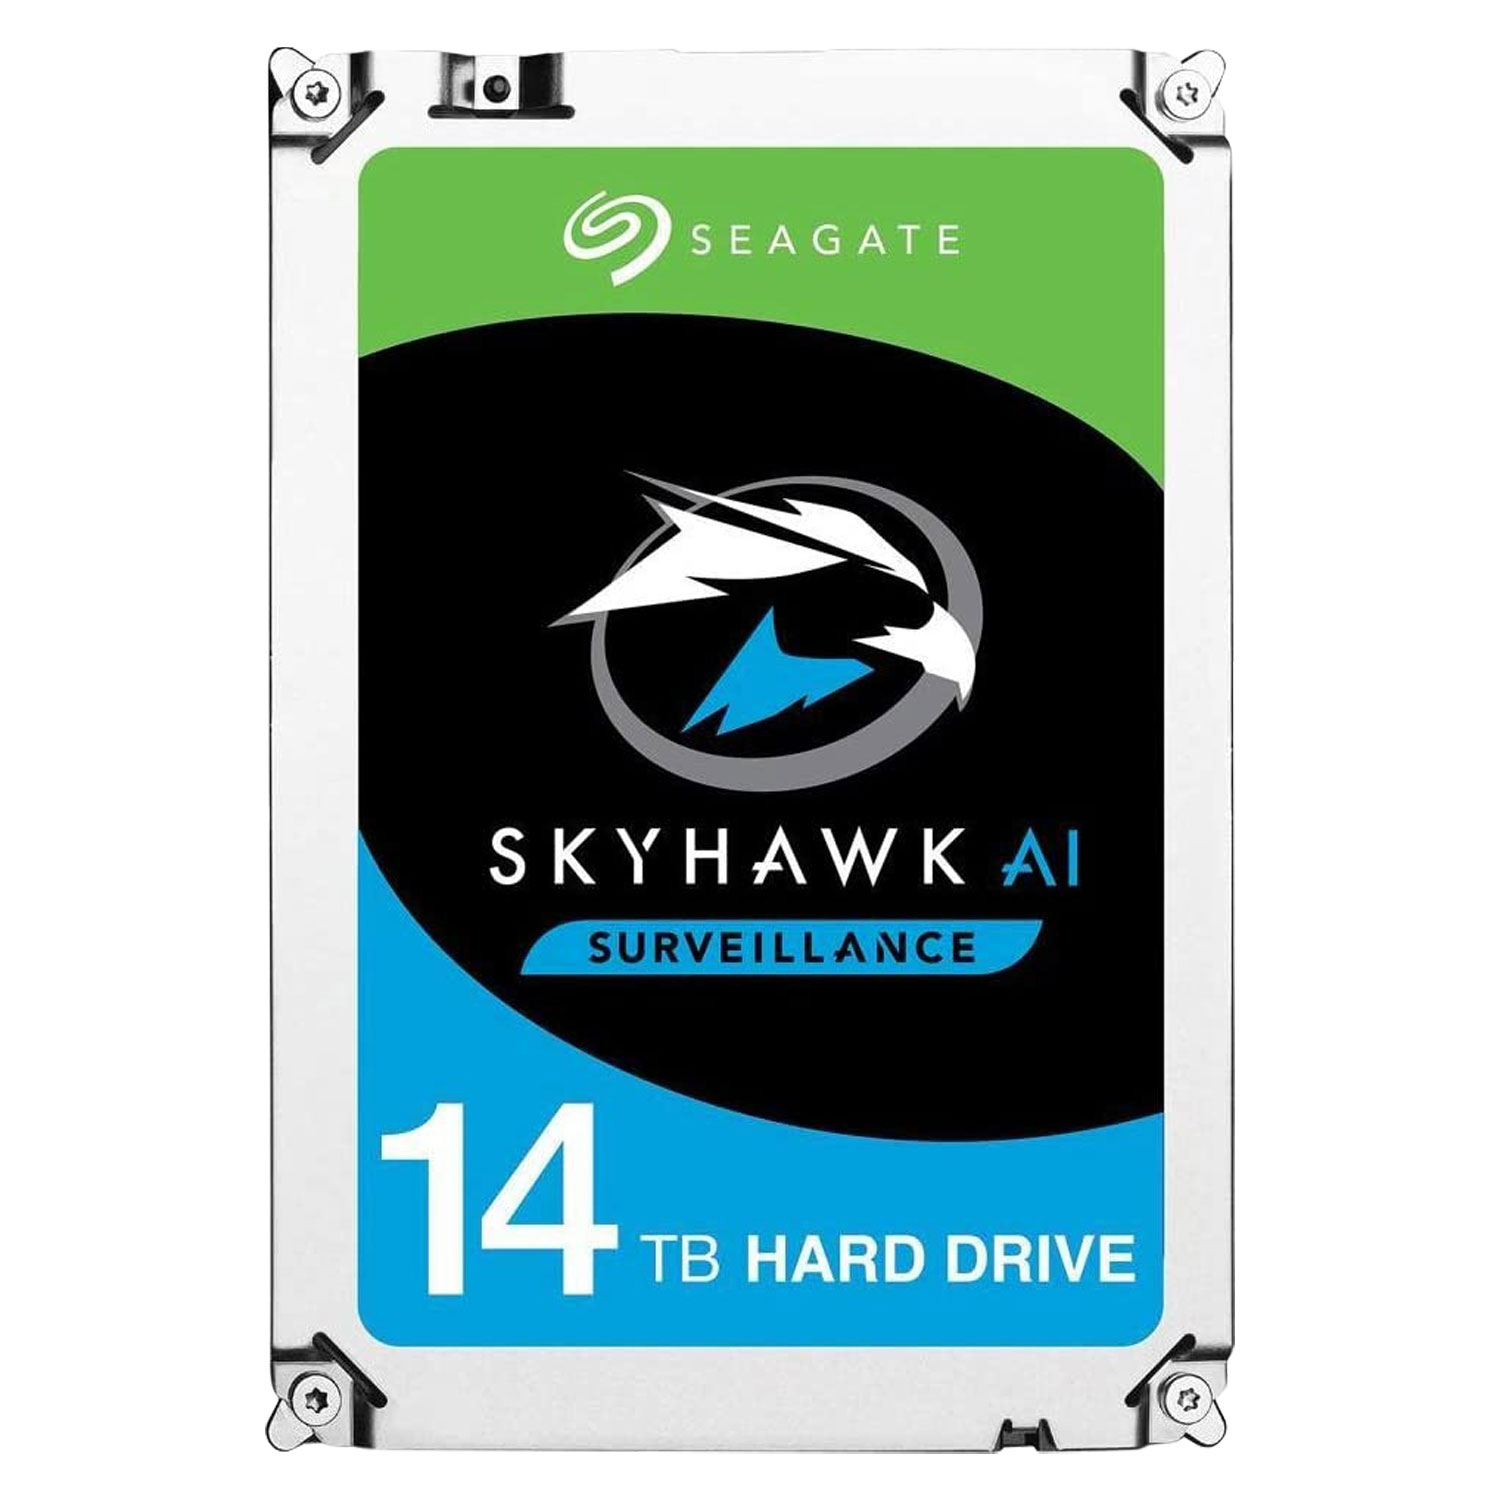 HD Seagate Skyhawk AI Surveillance 14TB / SATA 3 - (ST14000VE0008)
